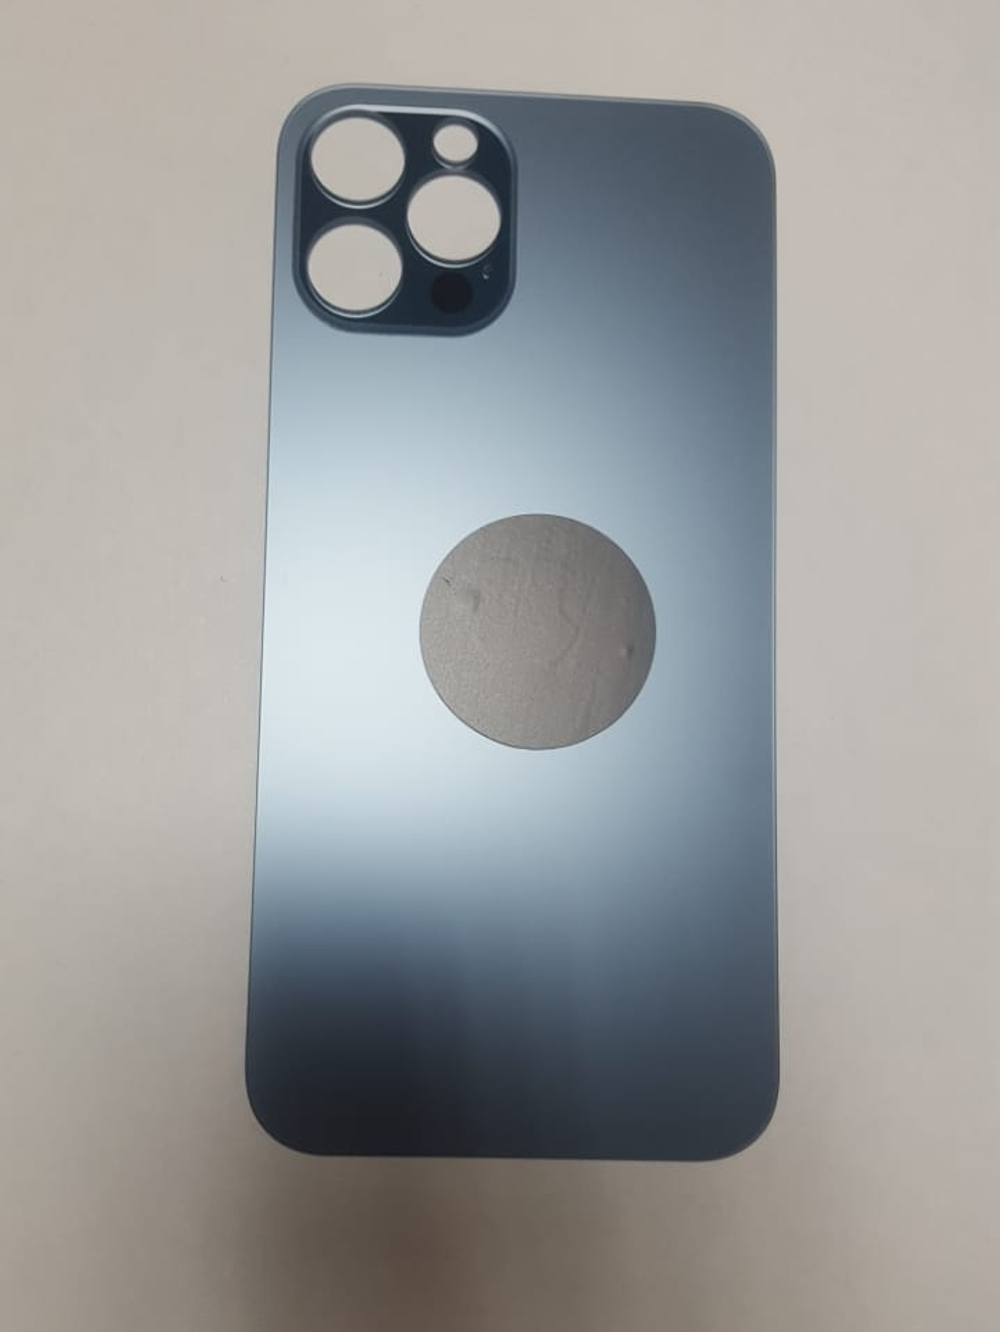 Задняя крышка для iPhone 12 Pro Синий (стекло, широкий вырез под камеру, логотип)